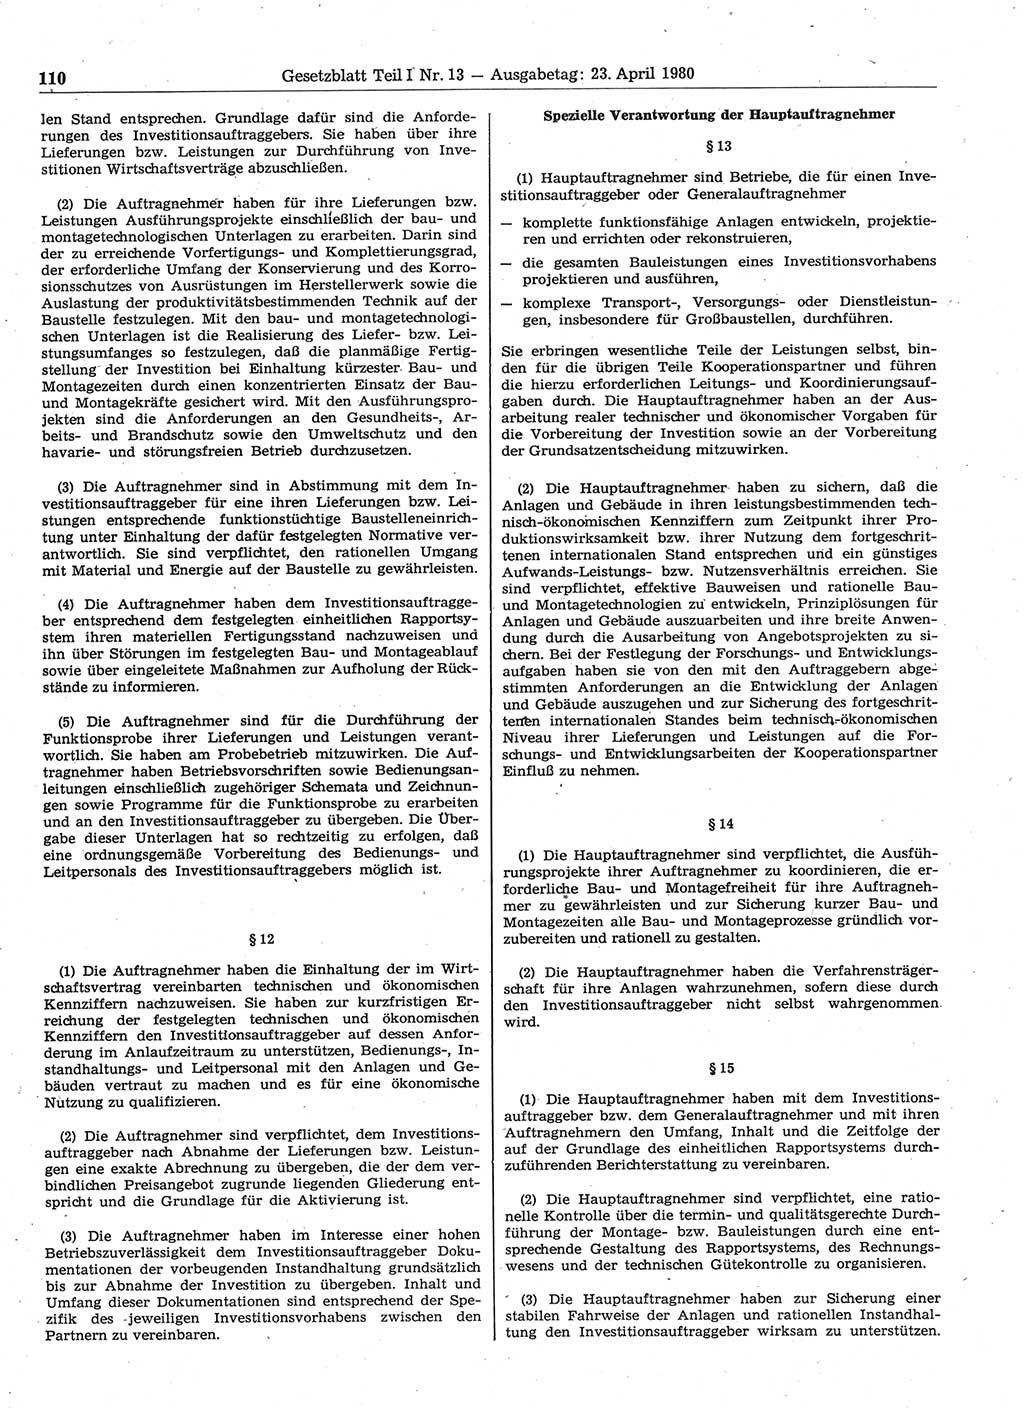 Gesetzblatt (GBl.) der Deutschen Demokratischen Republik (DDR) Teil Ⅰ 1980, Seite 110 (GBl. DDR Ⅰ 1980, S. 110)